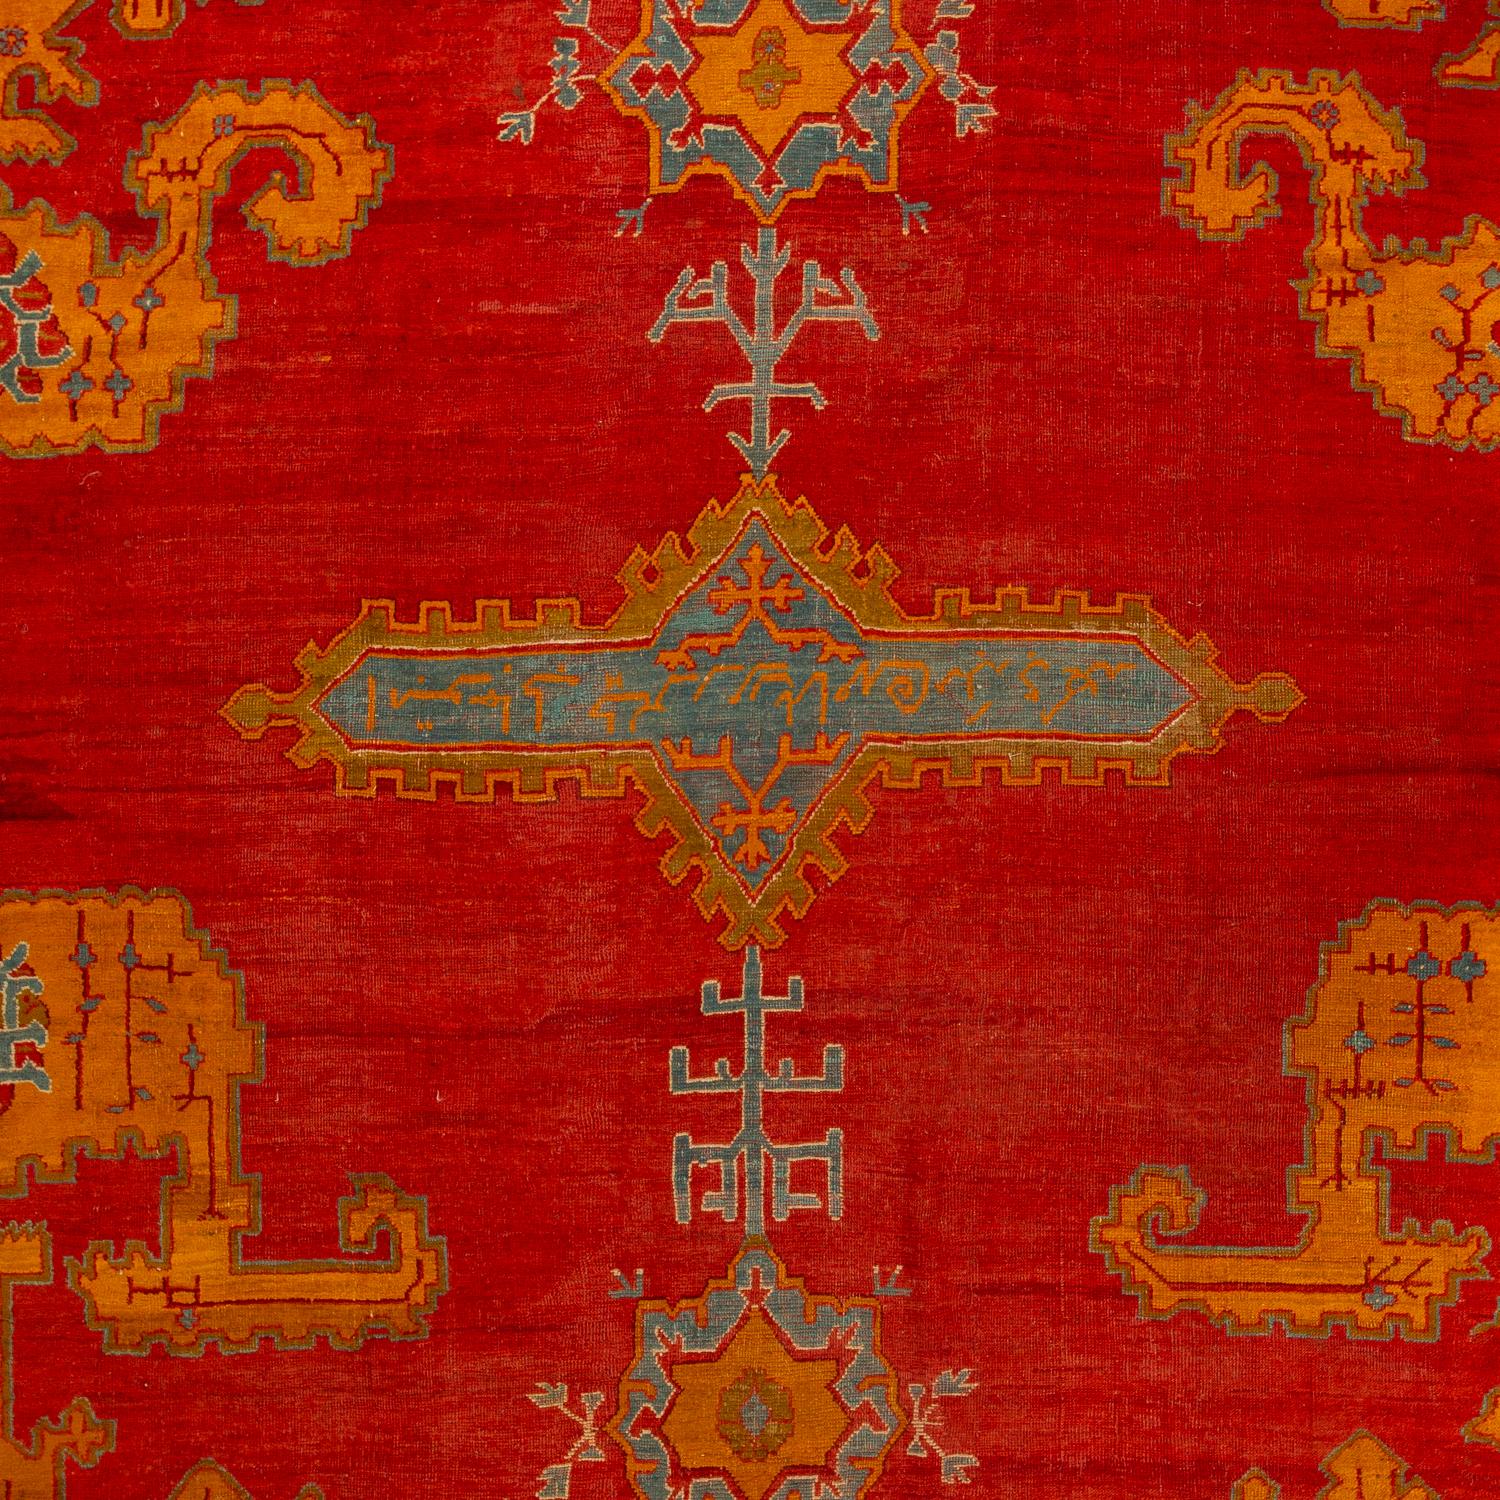 Ce tapis traditionnel est noué à la main dans le style de tissage anatolien. Les couleurs sont vives, audacieuses et puissantes, procurant un sentiment de chaleur et d'âme qui ne peut provenir que de quelque chose de cultivé. Les tapis turcs sont un